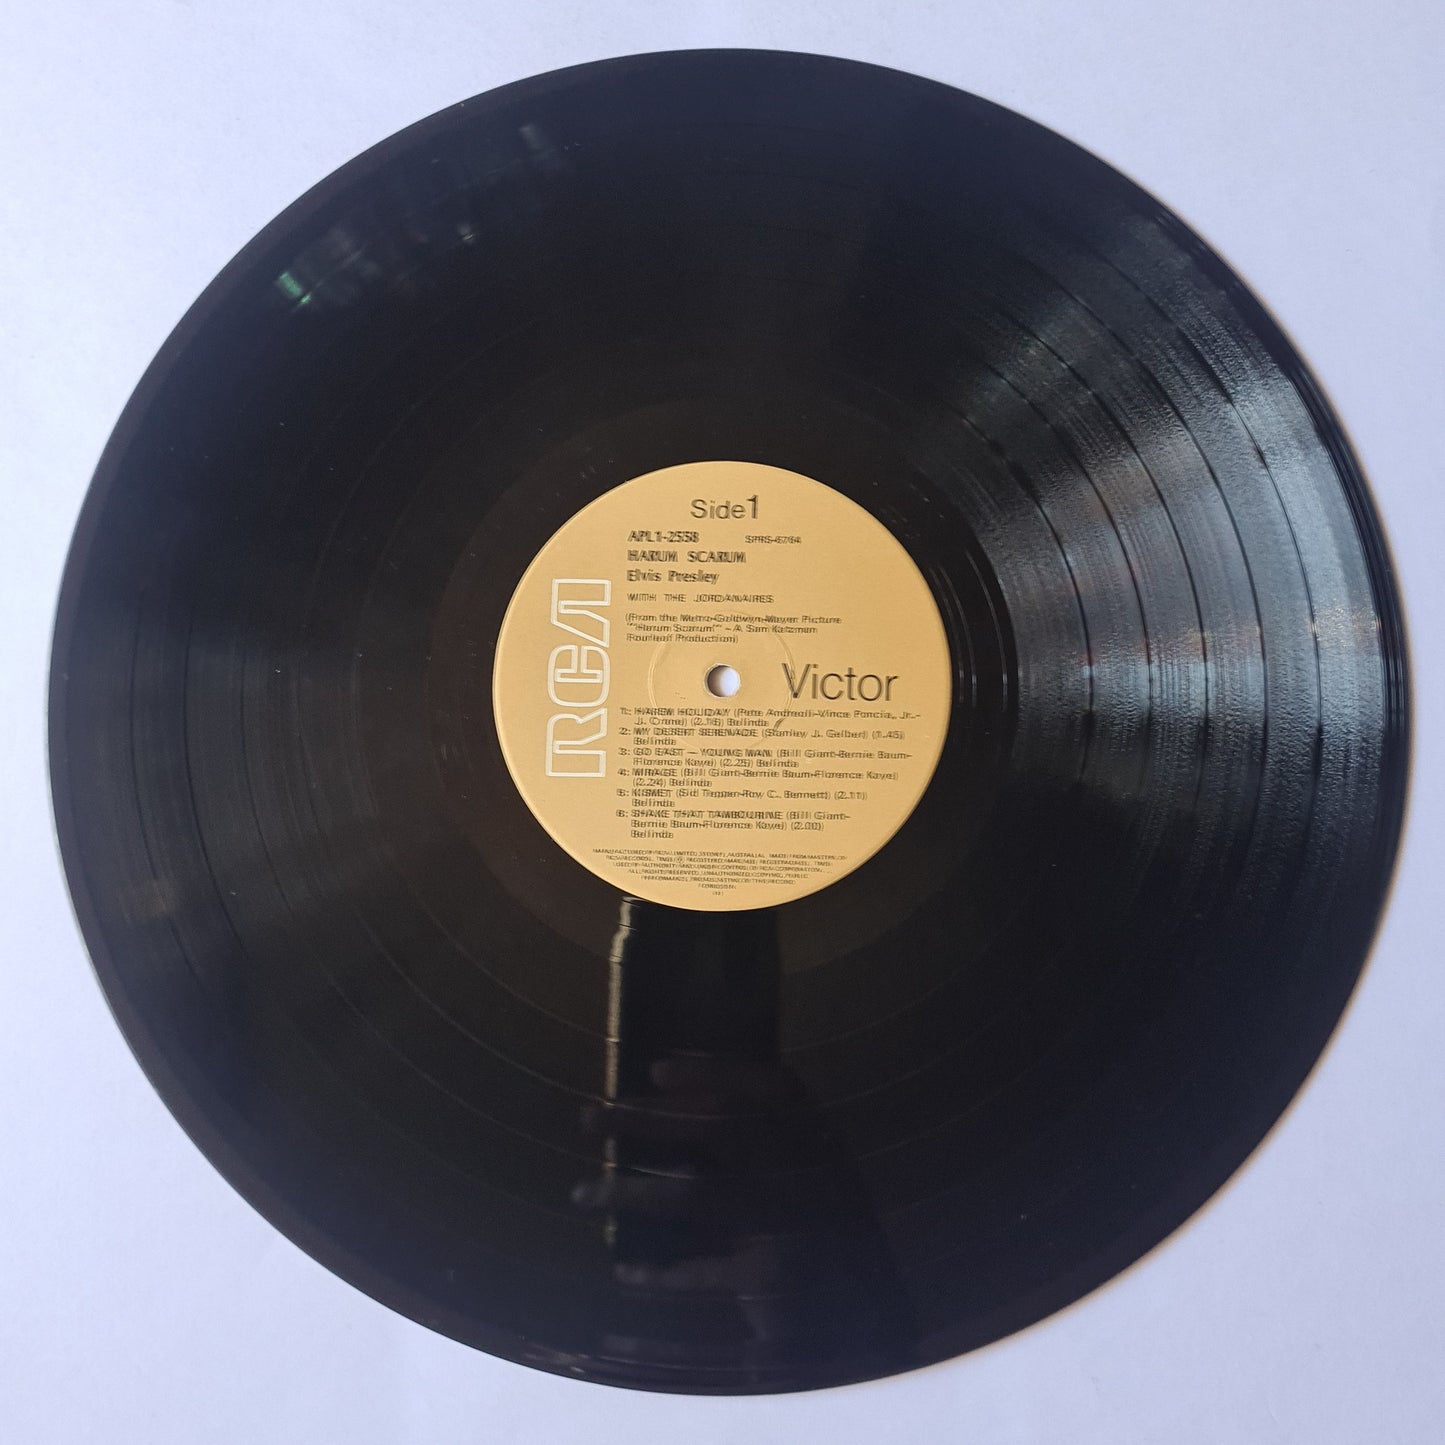 Elvis Presley – Harum Scarum - 1978 Pressing - Vinyl Record